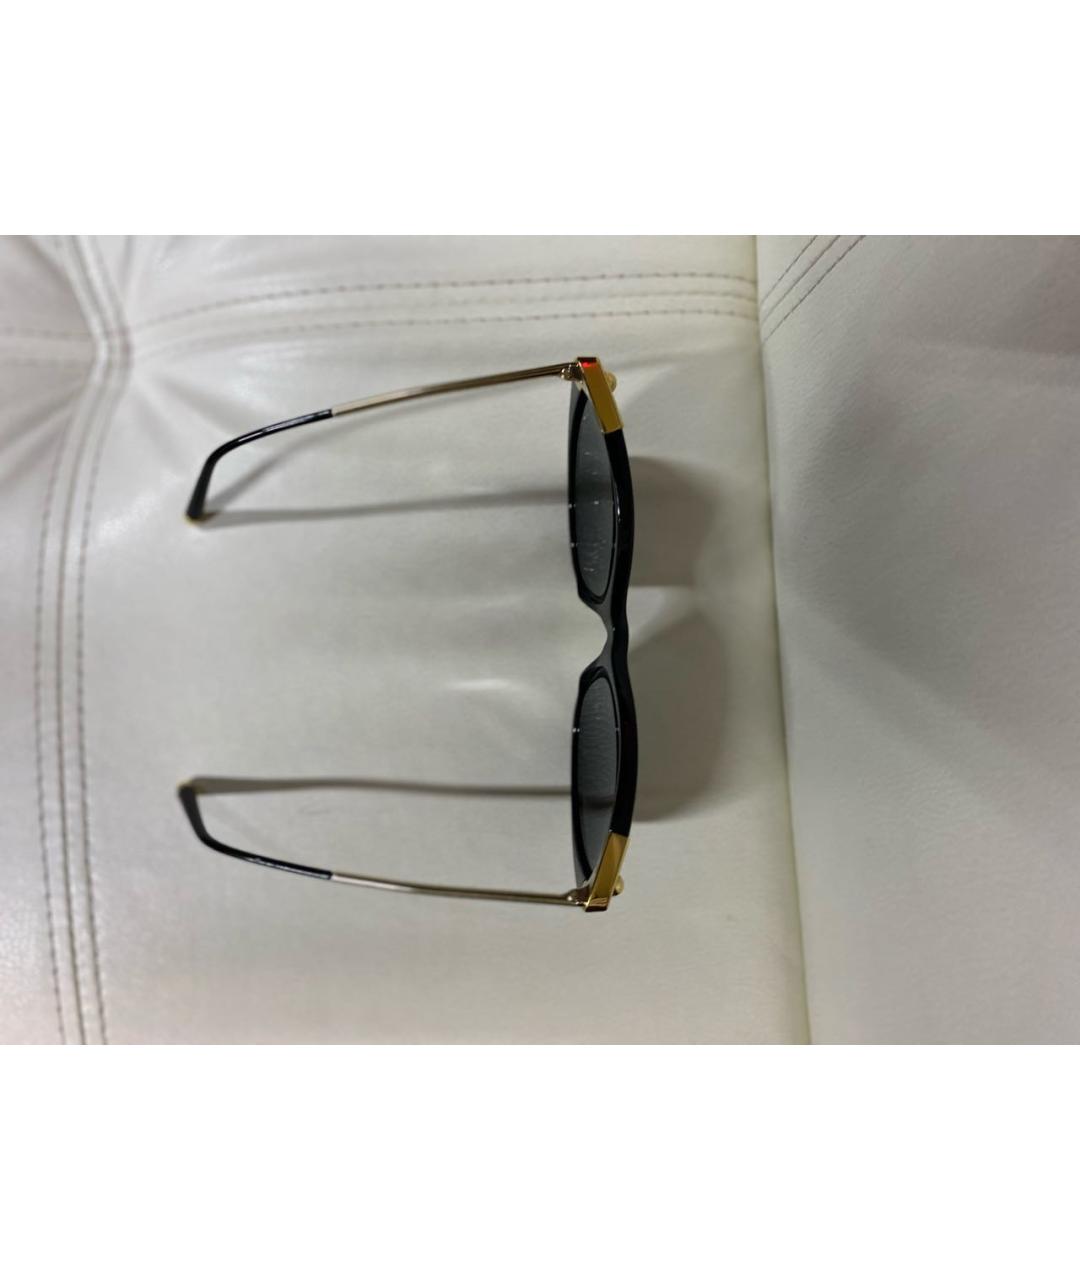 DOLCE&GABBANA Черные пластиковые солнцезащитные очки, фото 3